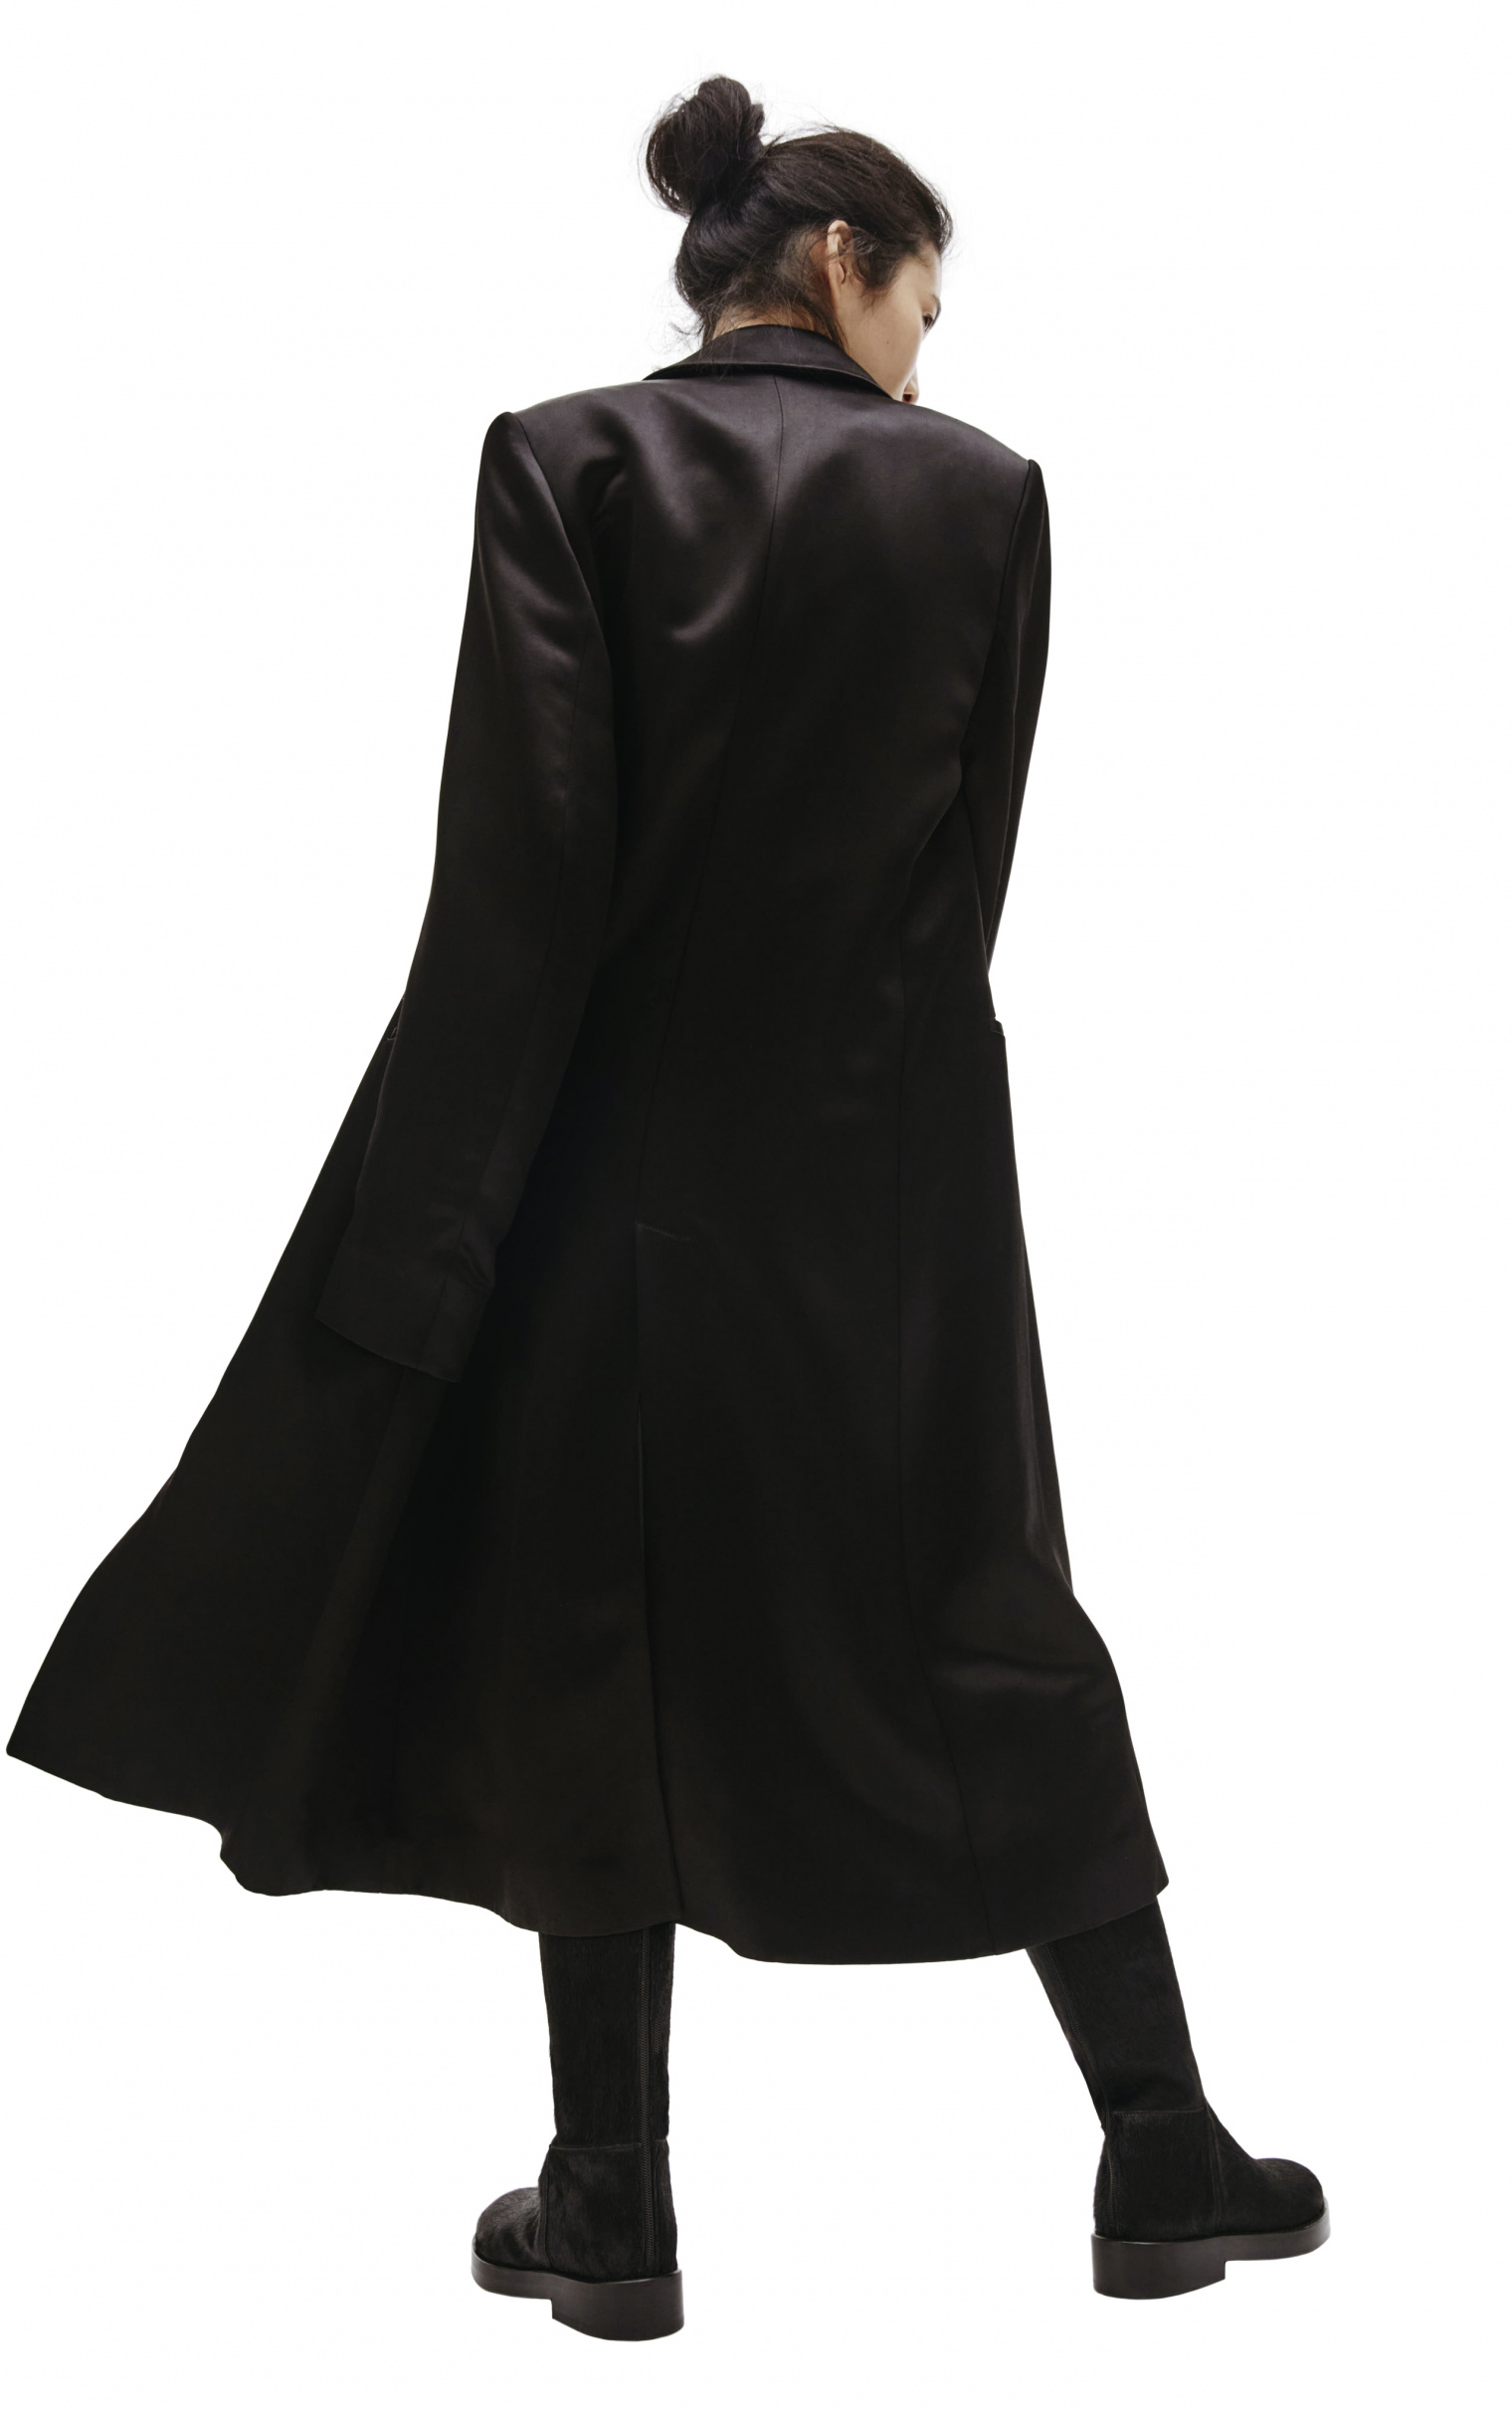 Ann Demeulemeester Black Satin Coat